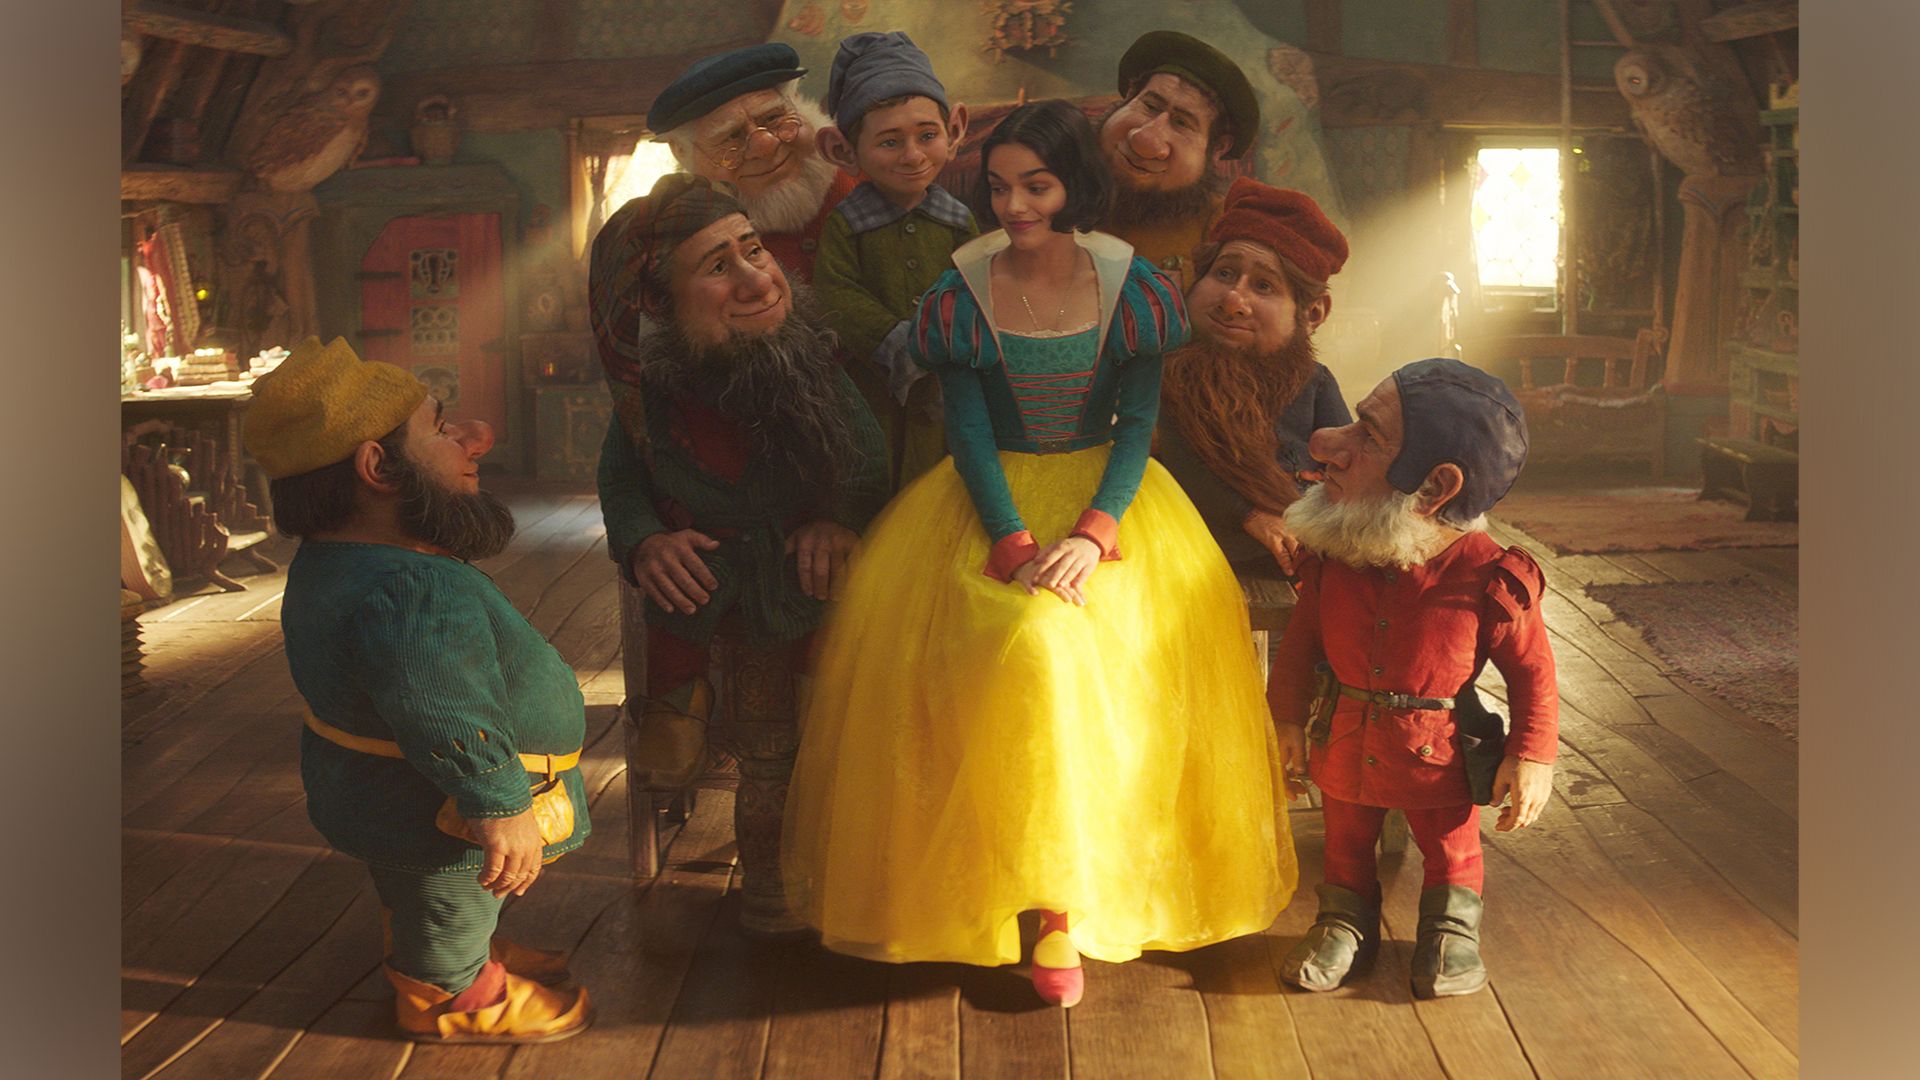 Rachel Zegler as Snow White